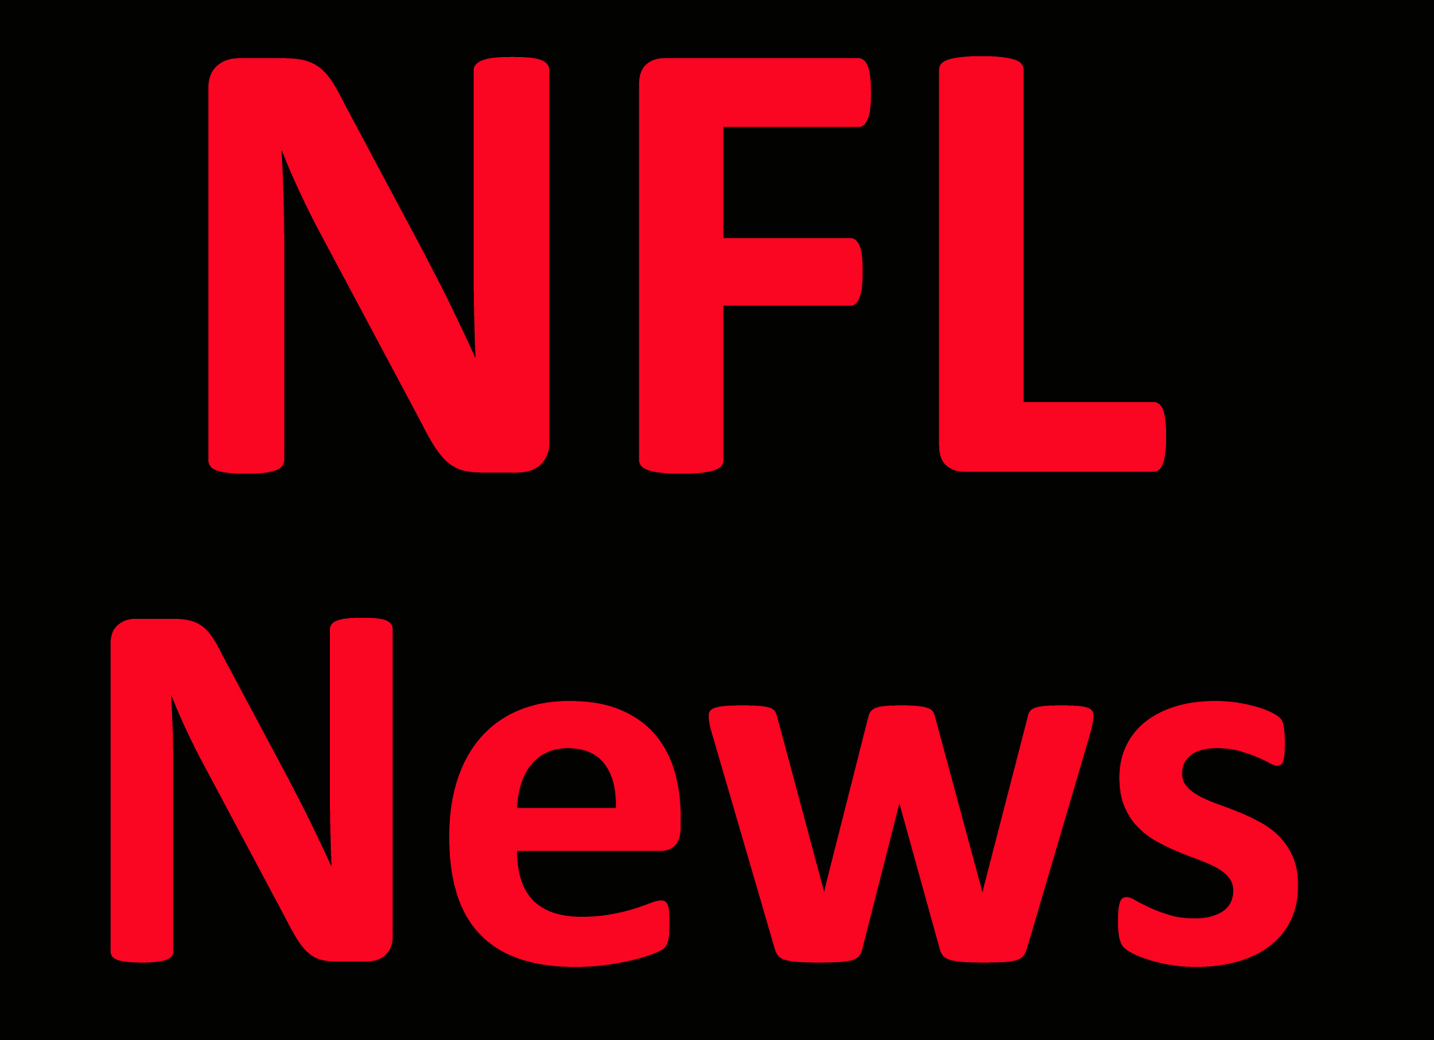 NFL News: Packers’ De’Vondre Campbell gets 63-yard pick-six vs. Commanders Per Report